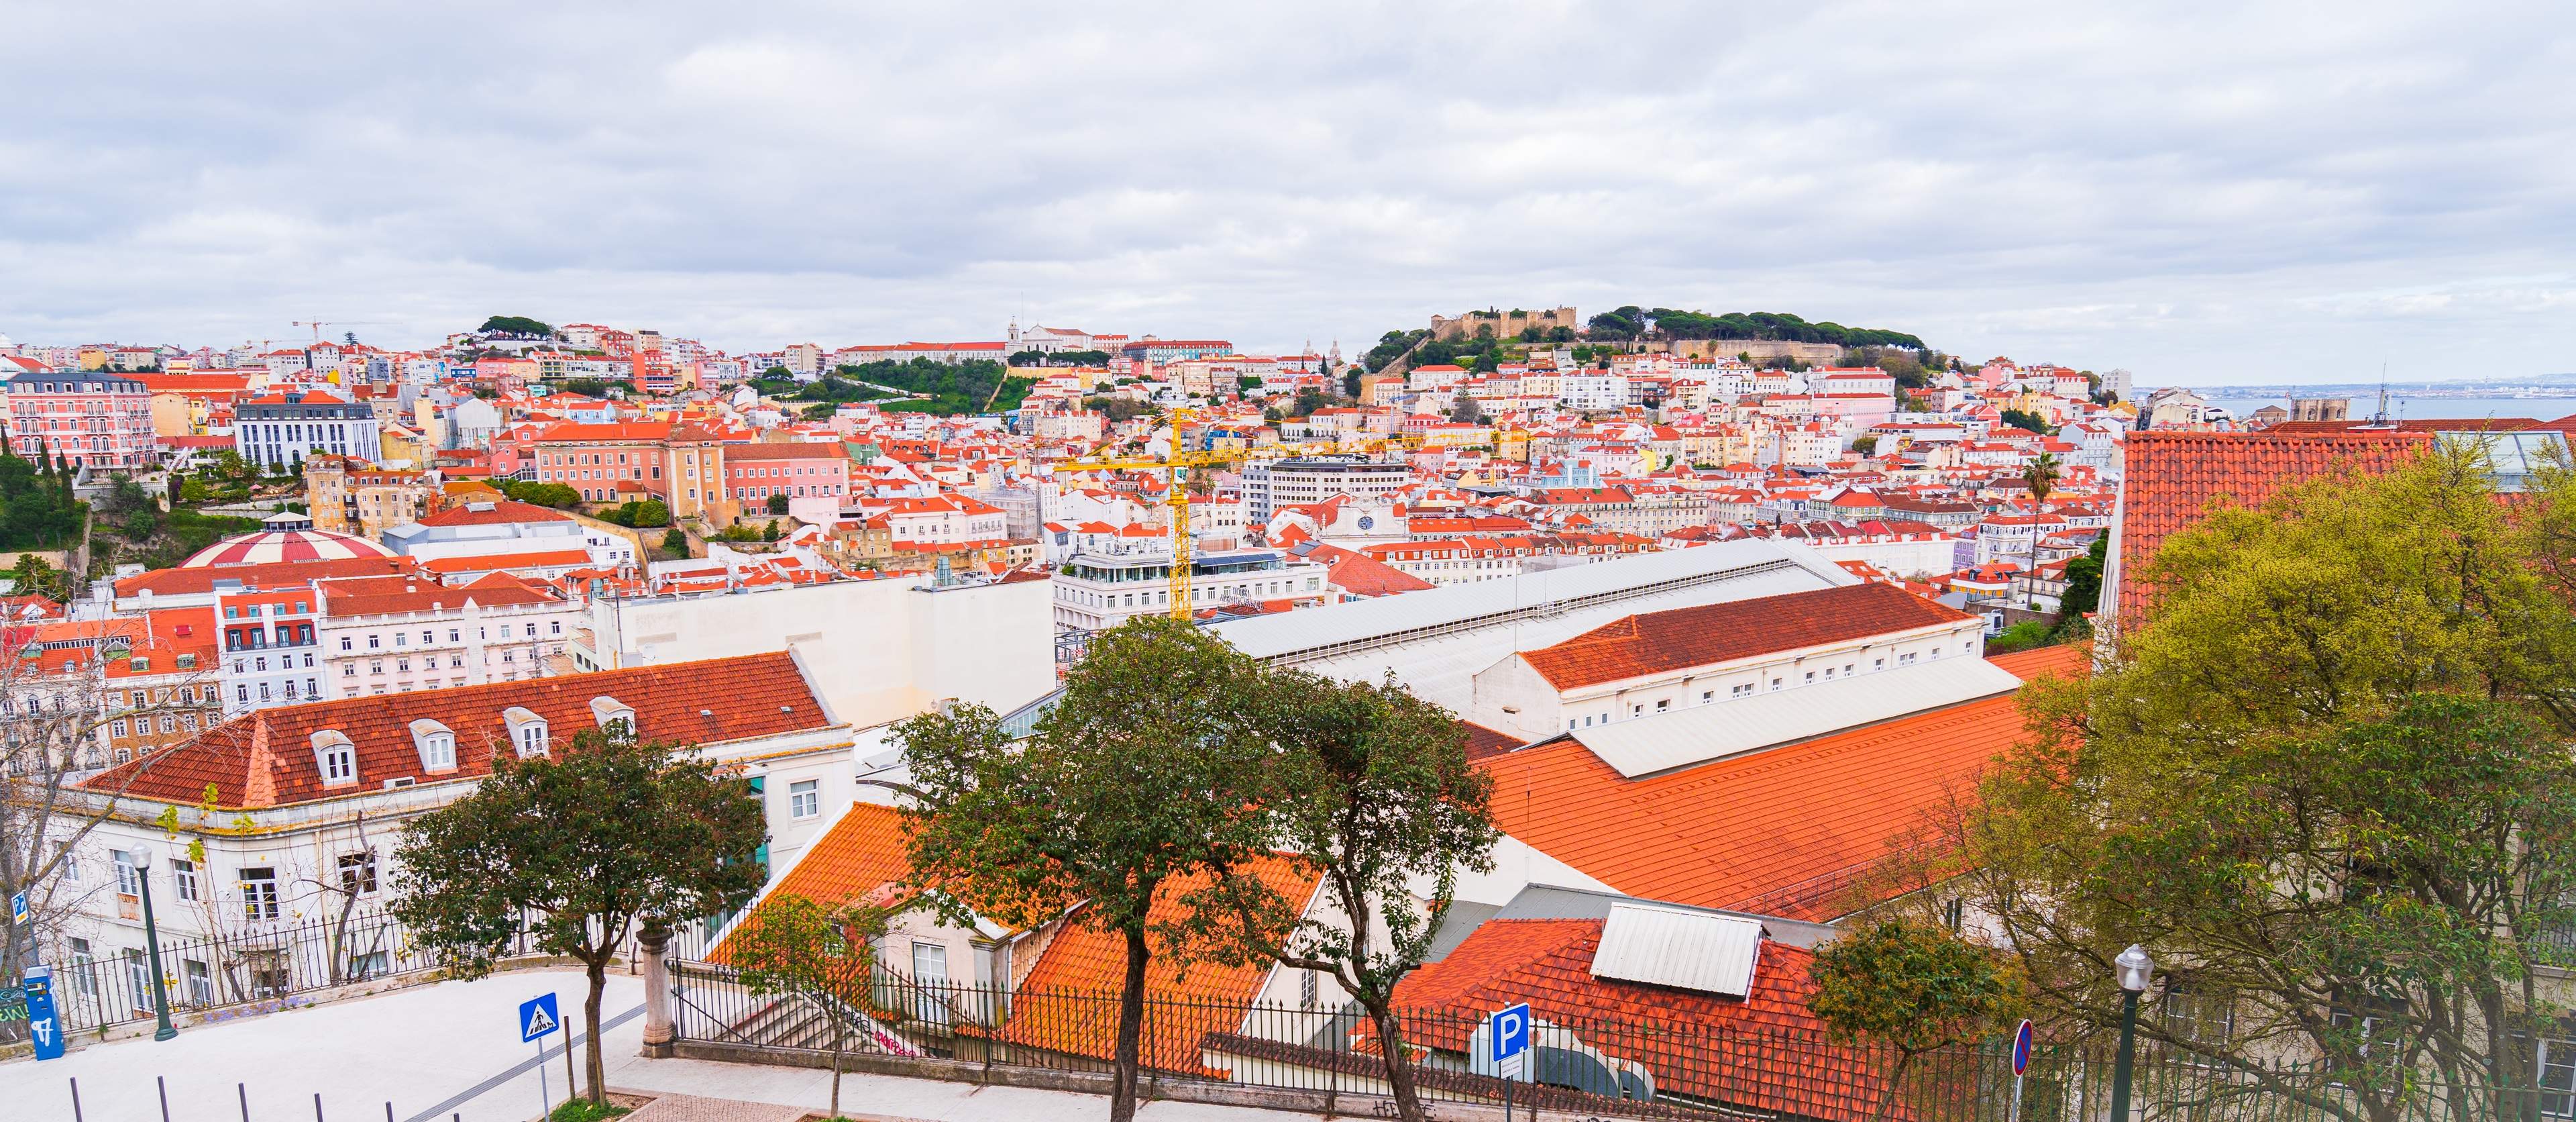 The view from Miradouro de São Pedro de Alcântara, Lisbon, Portugal